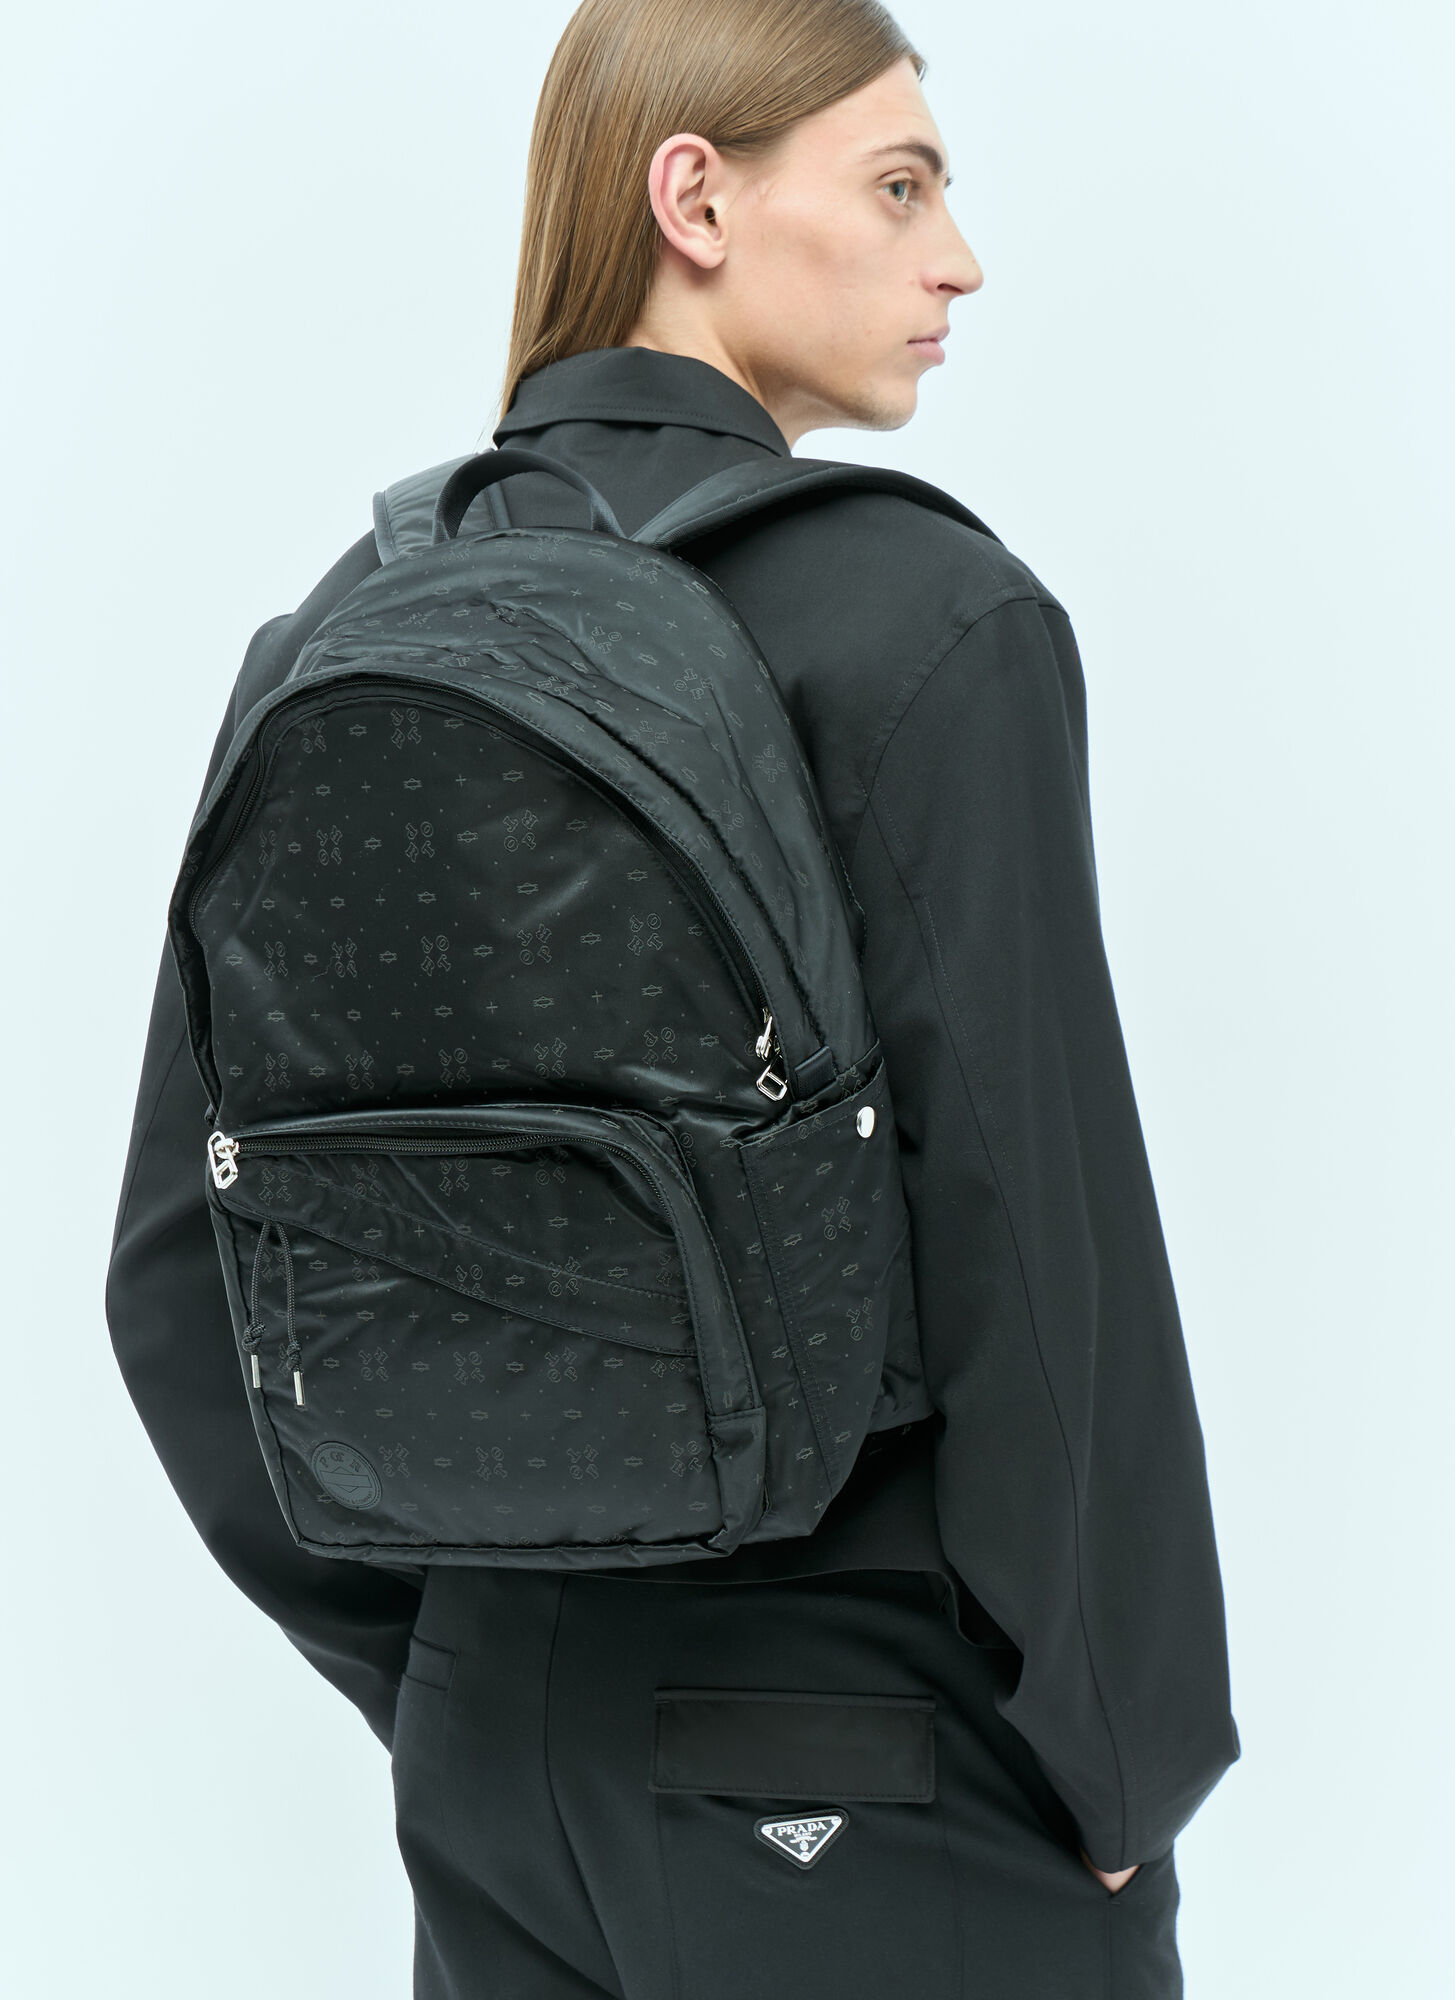 Porter-yoshida & Co Monogram Daypack In Black